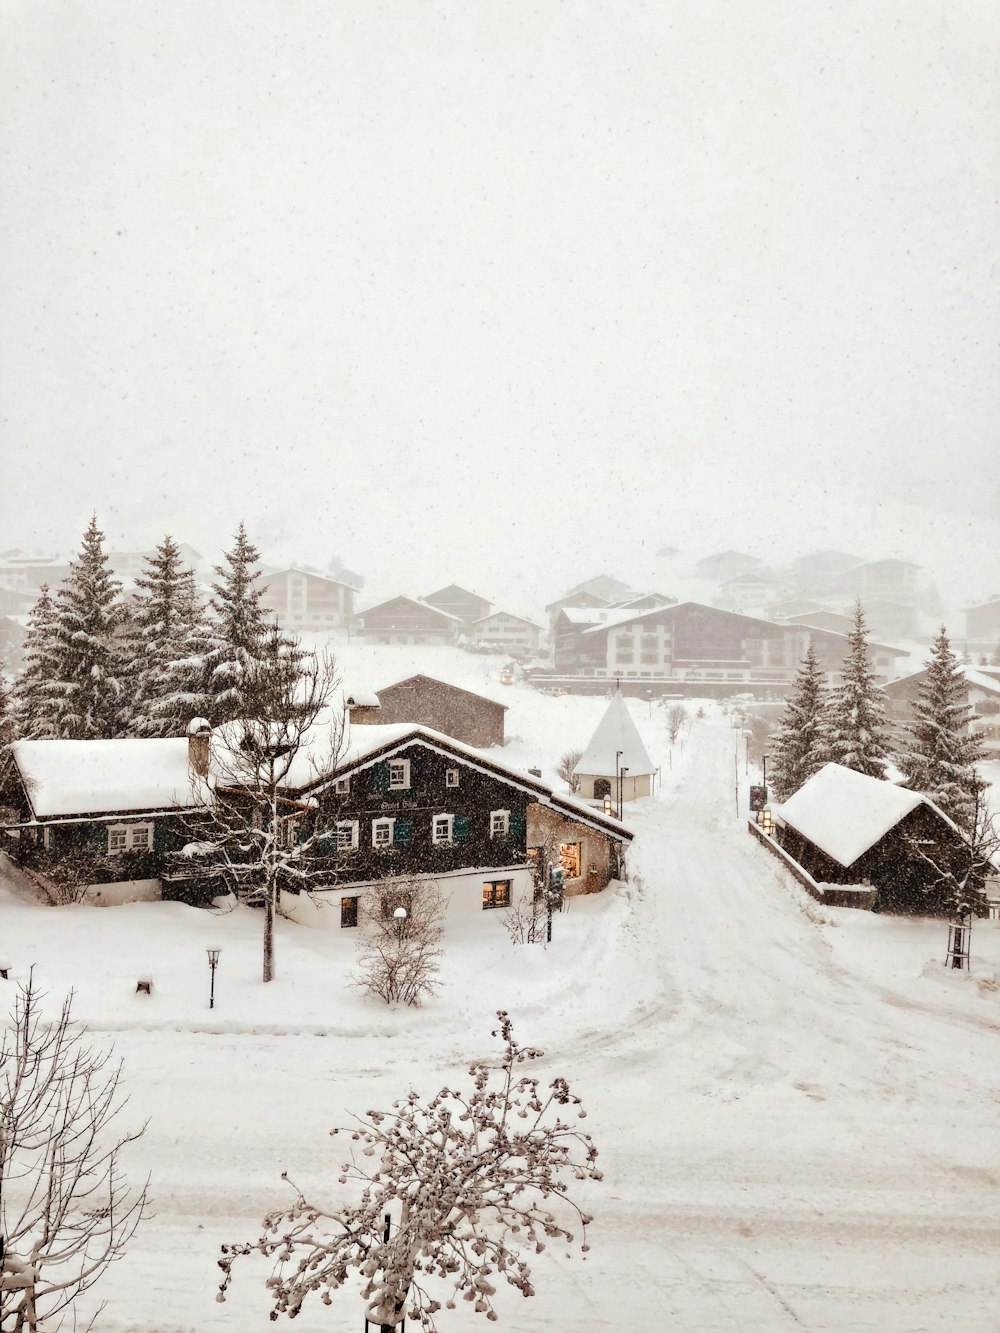 Casa de madera marrón cubierta de nieve durante el día